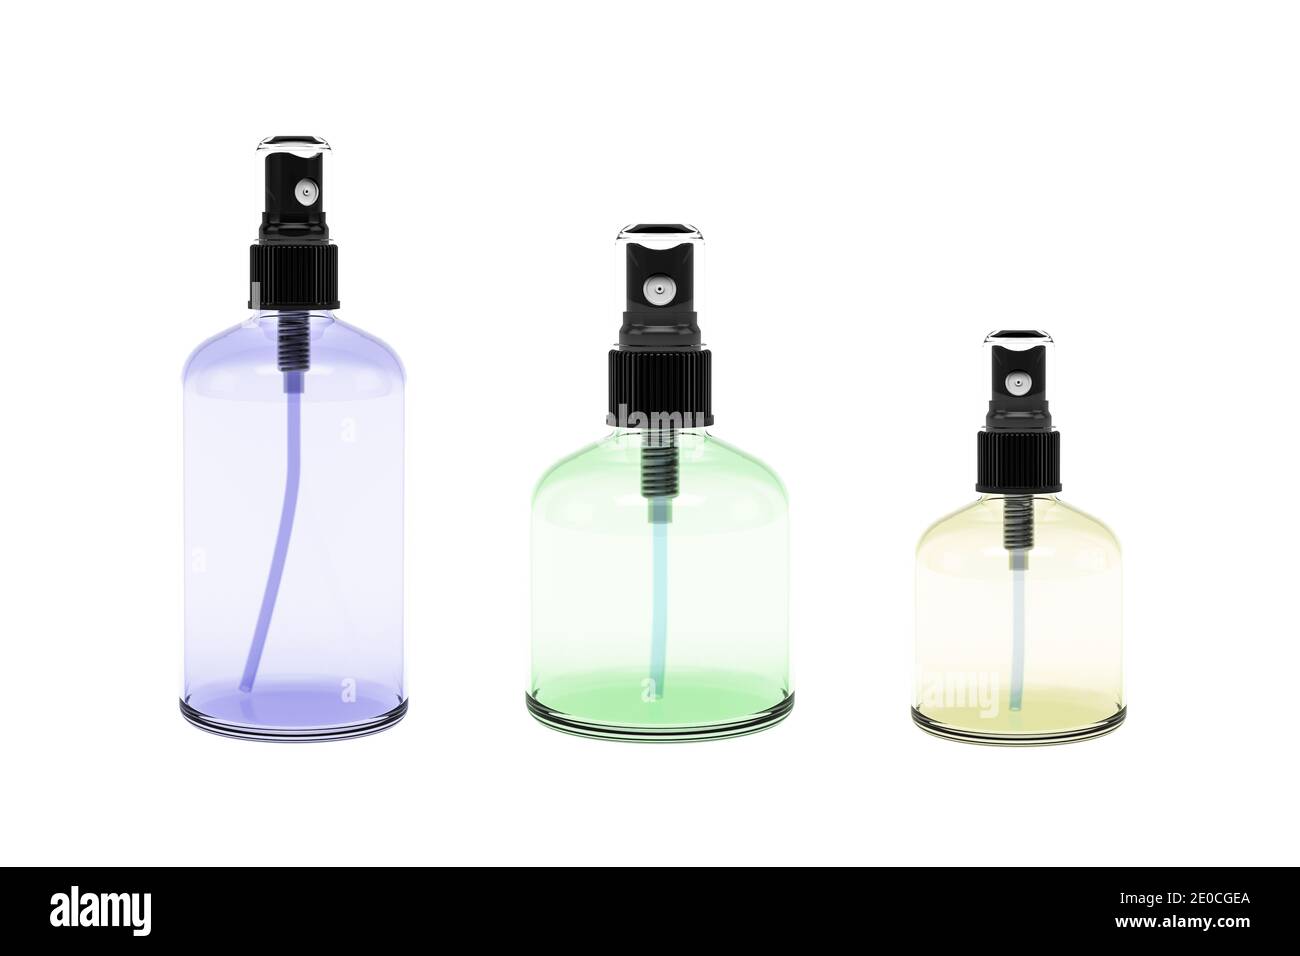 Glasflasche isoliert auf weißem Hintergrund - 3d-Rendering Stockfoto